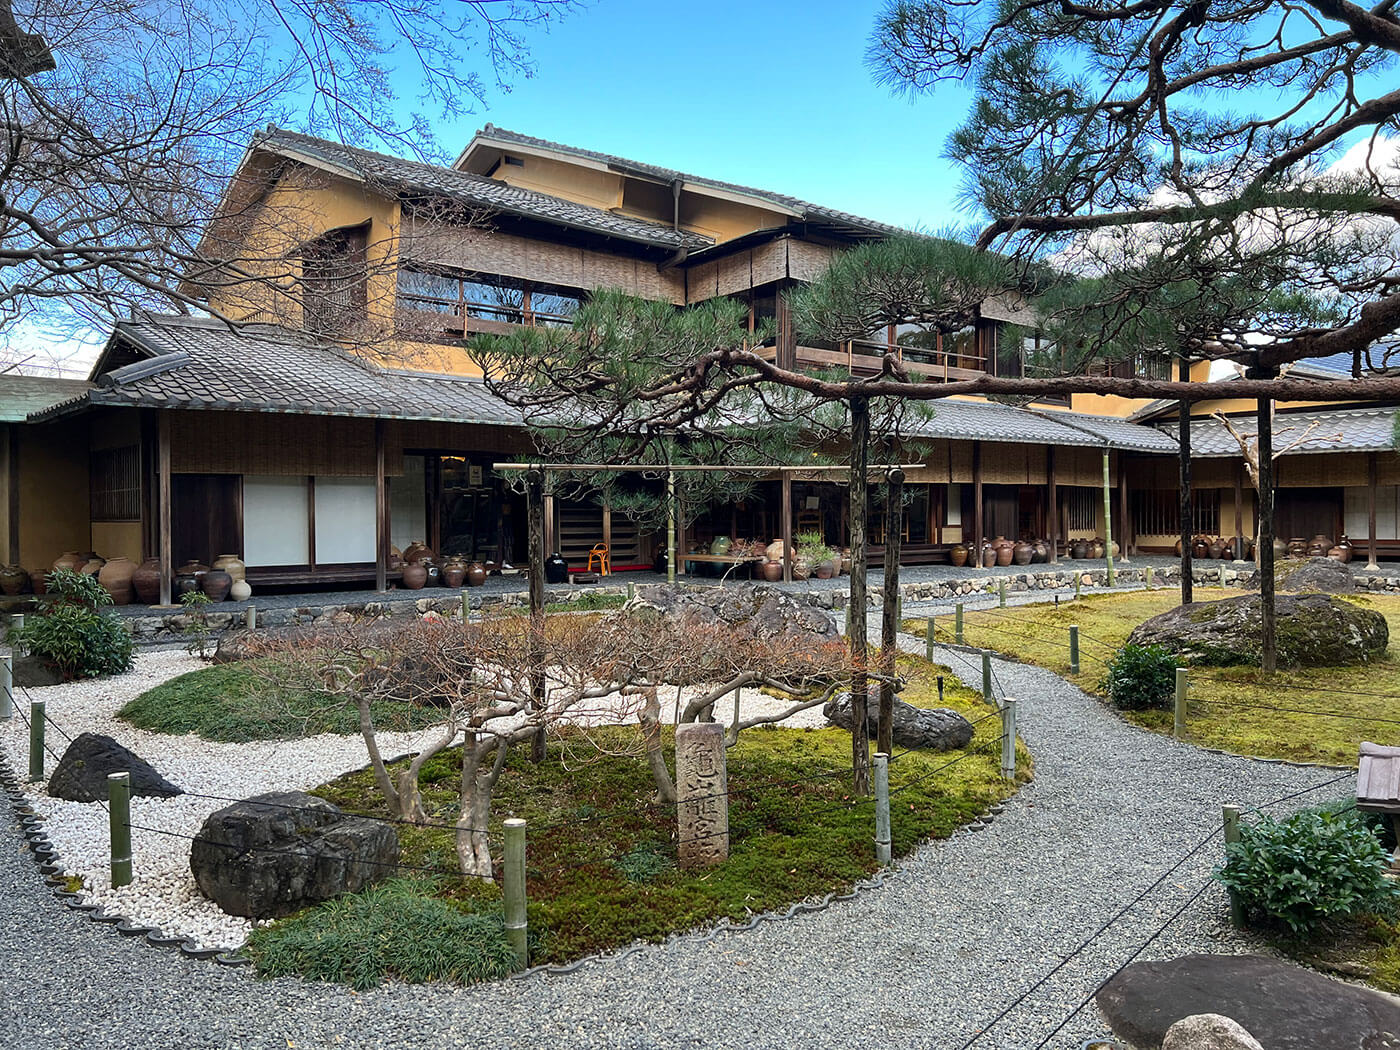 Yudofu Sagano in Arashiyama, Kyoto